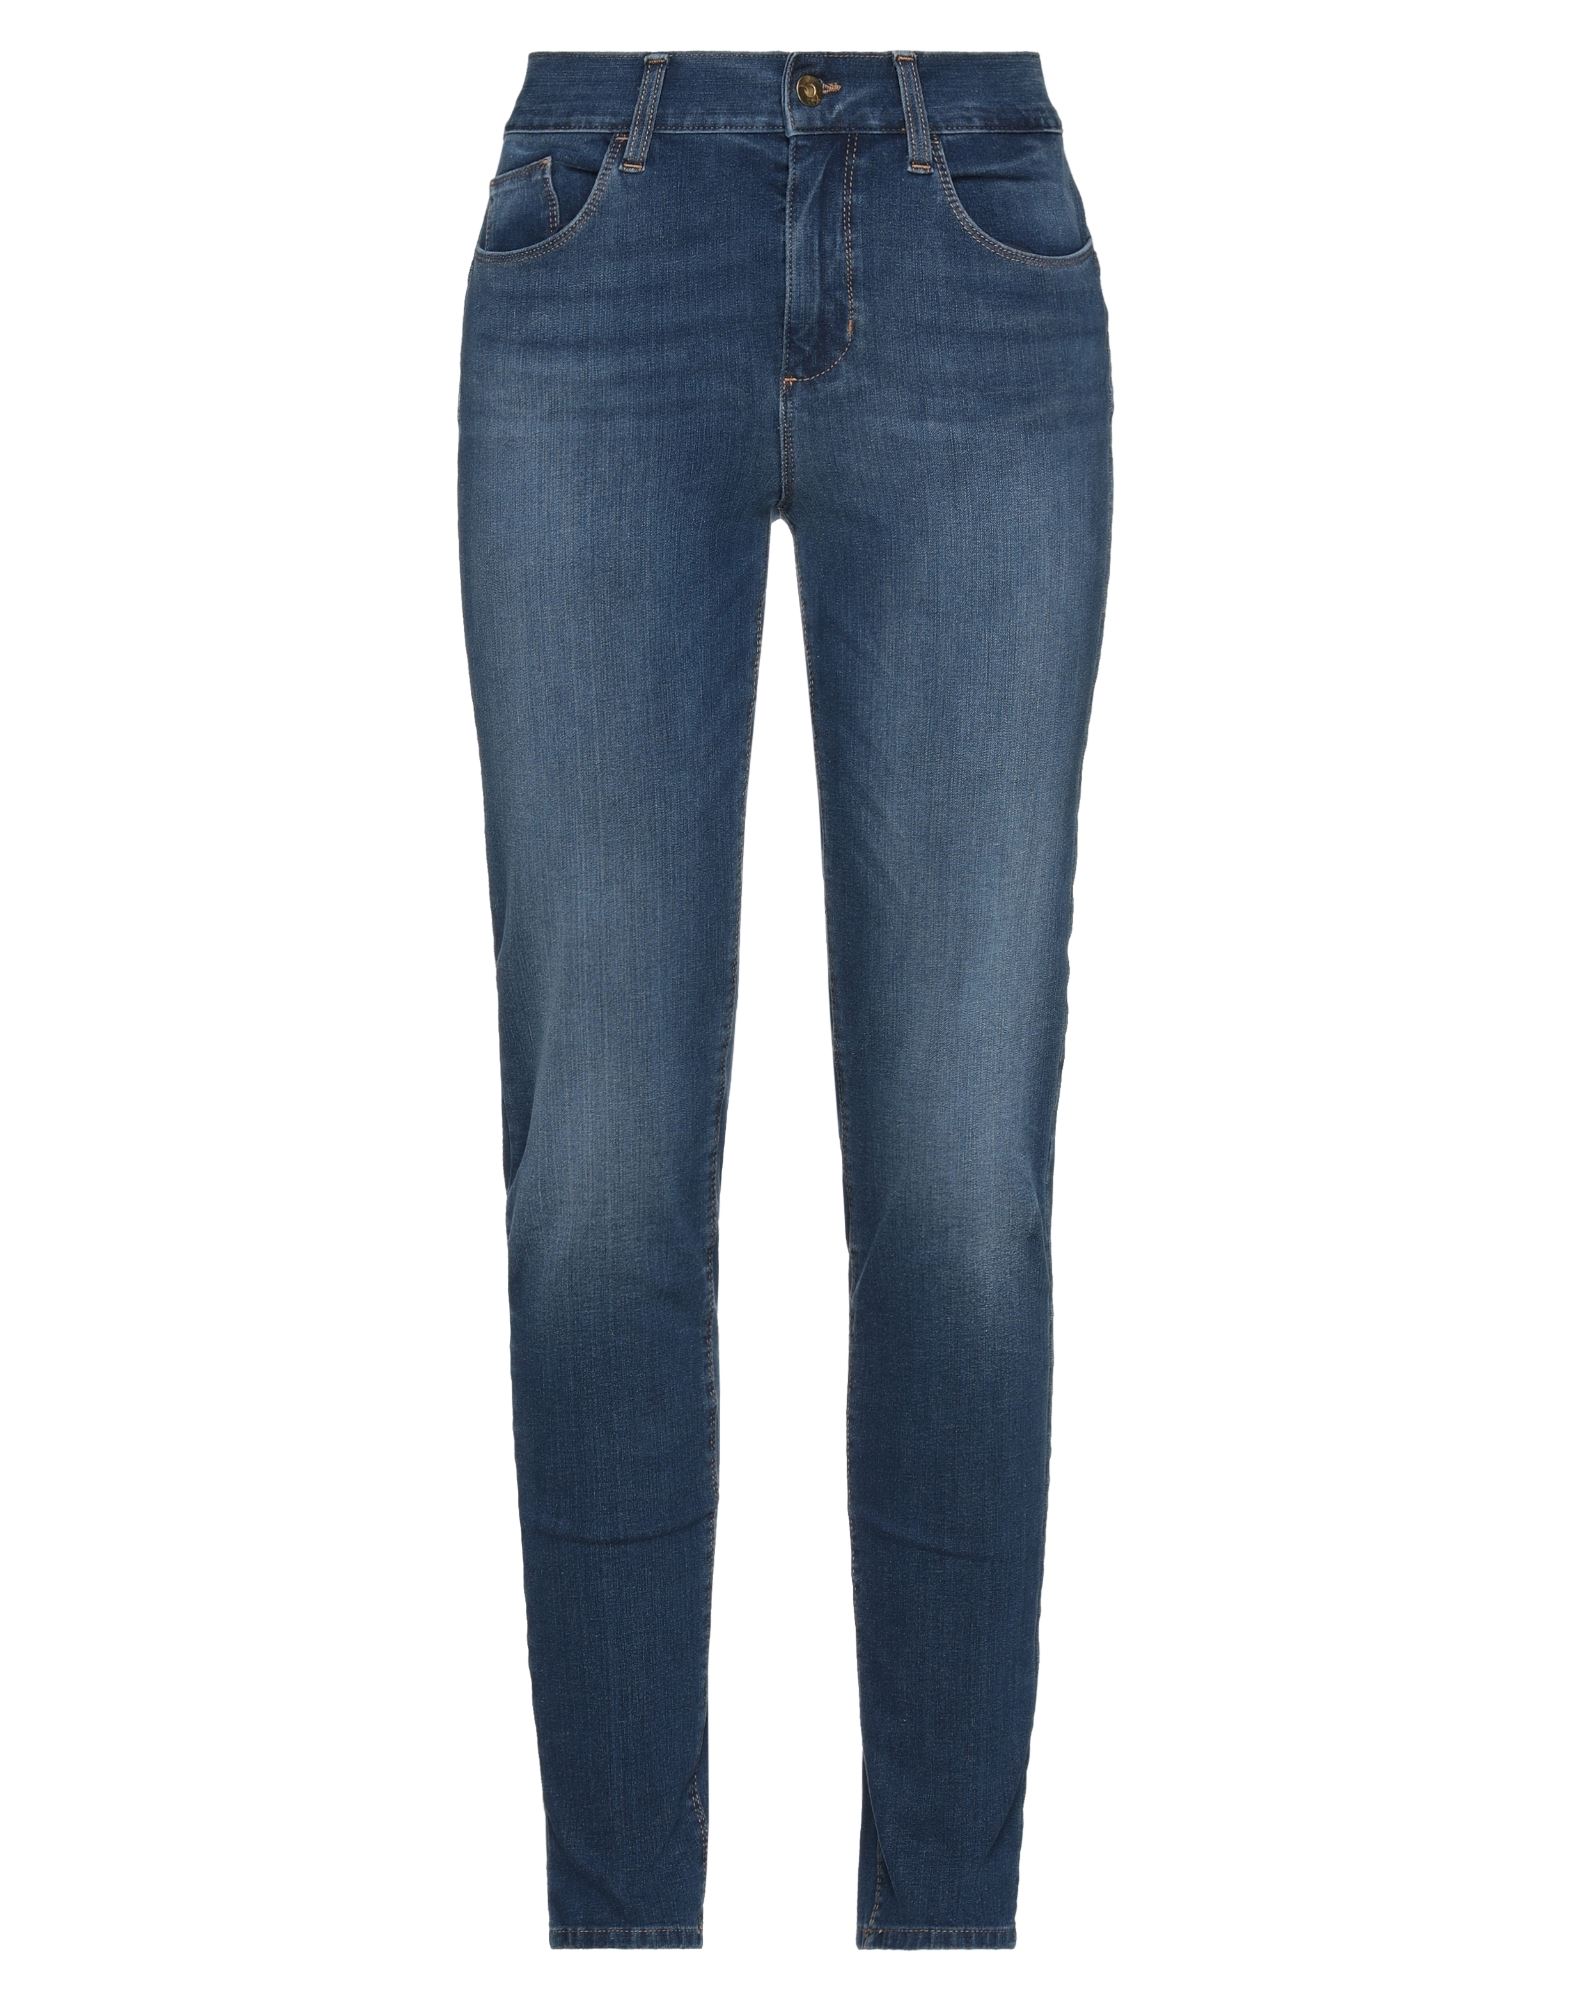 Liu •jo Woman Jeans Blue Size 27w-30l Cotton, Polyester, Elastane